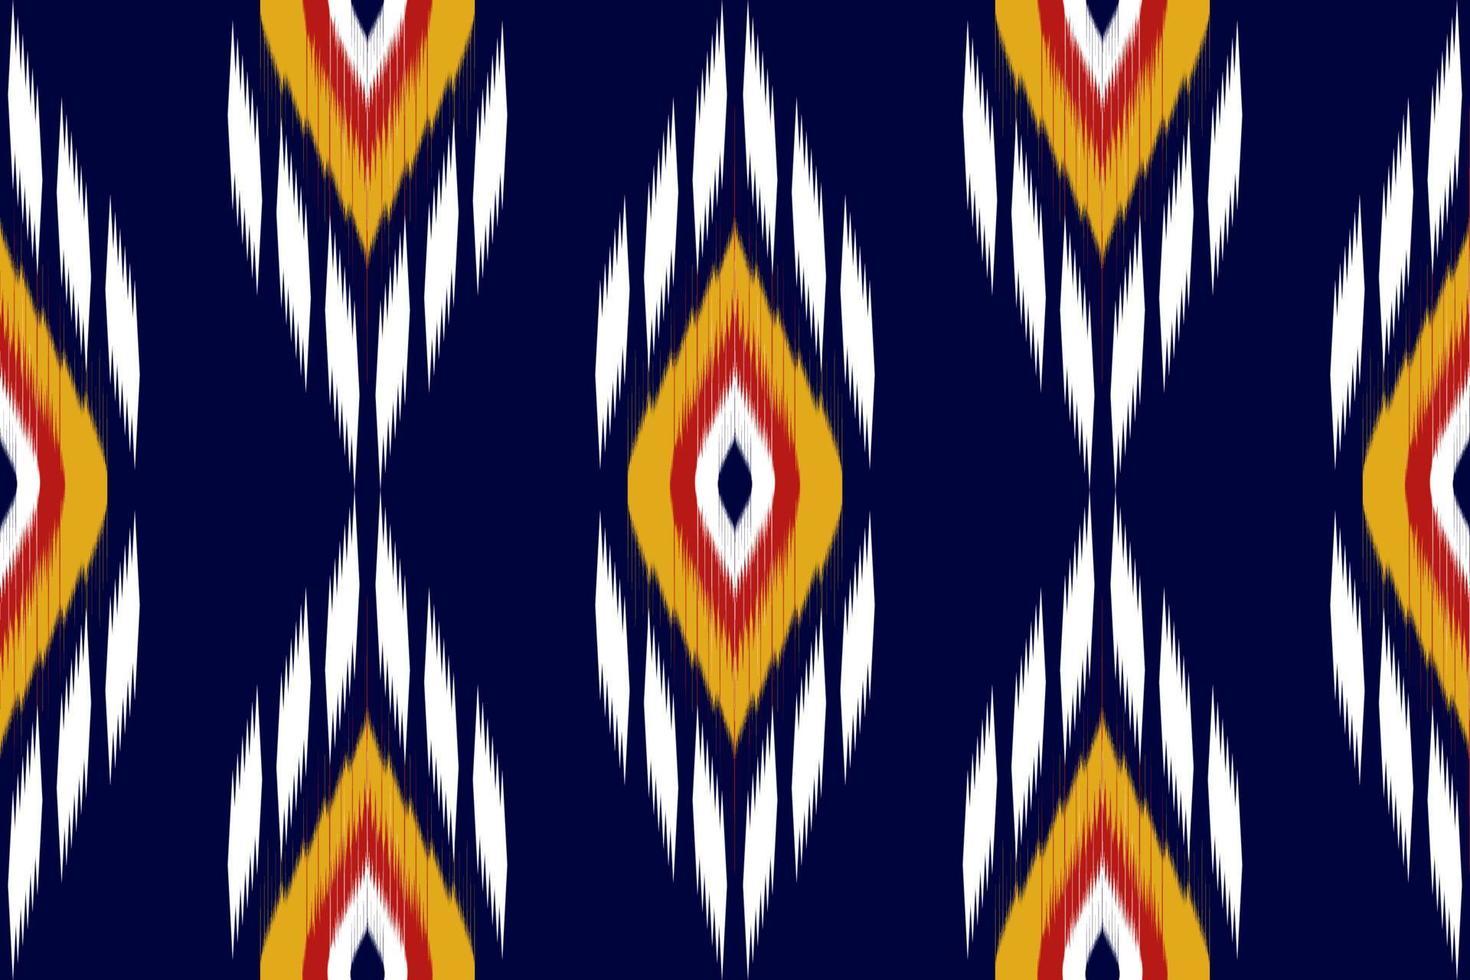 kleding stof etnisch patroon kunst. ikat naadloos patroon in stam. Amerikaans, Mexicaans stijl. ontwerp voor achtergrond, behang, vector illustratie, kleding stof, kleding, tapijt, textiel, batik, borduurwerk.